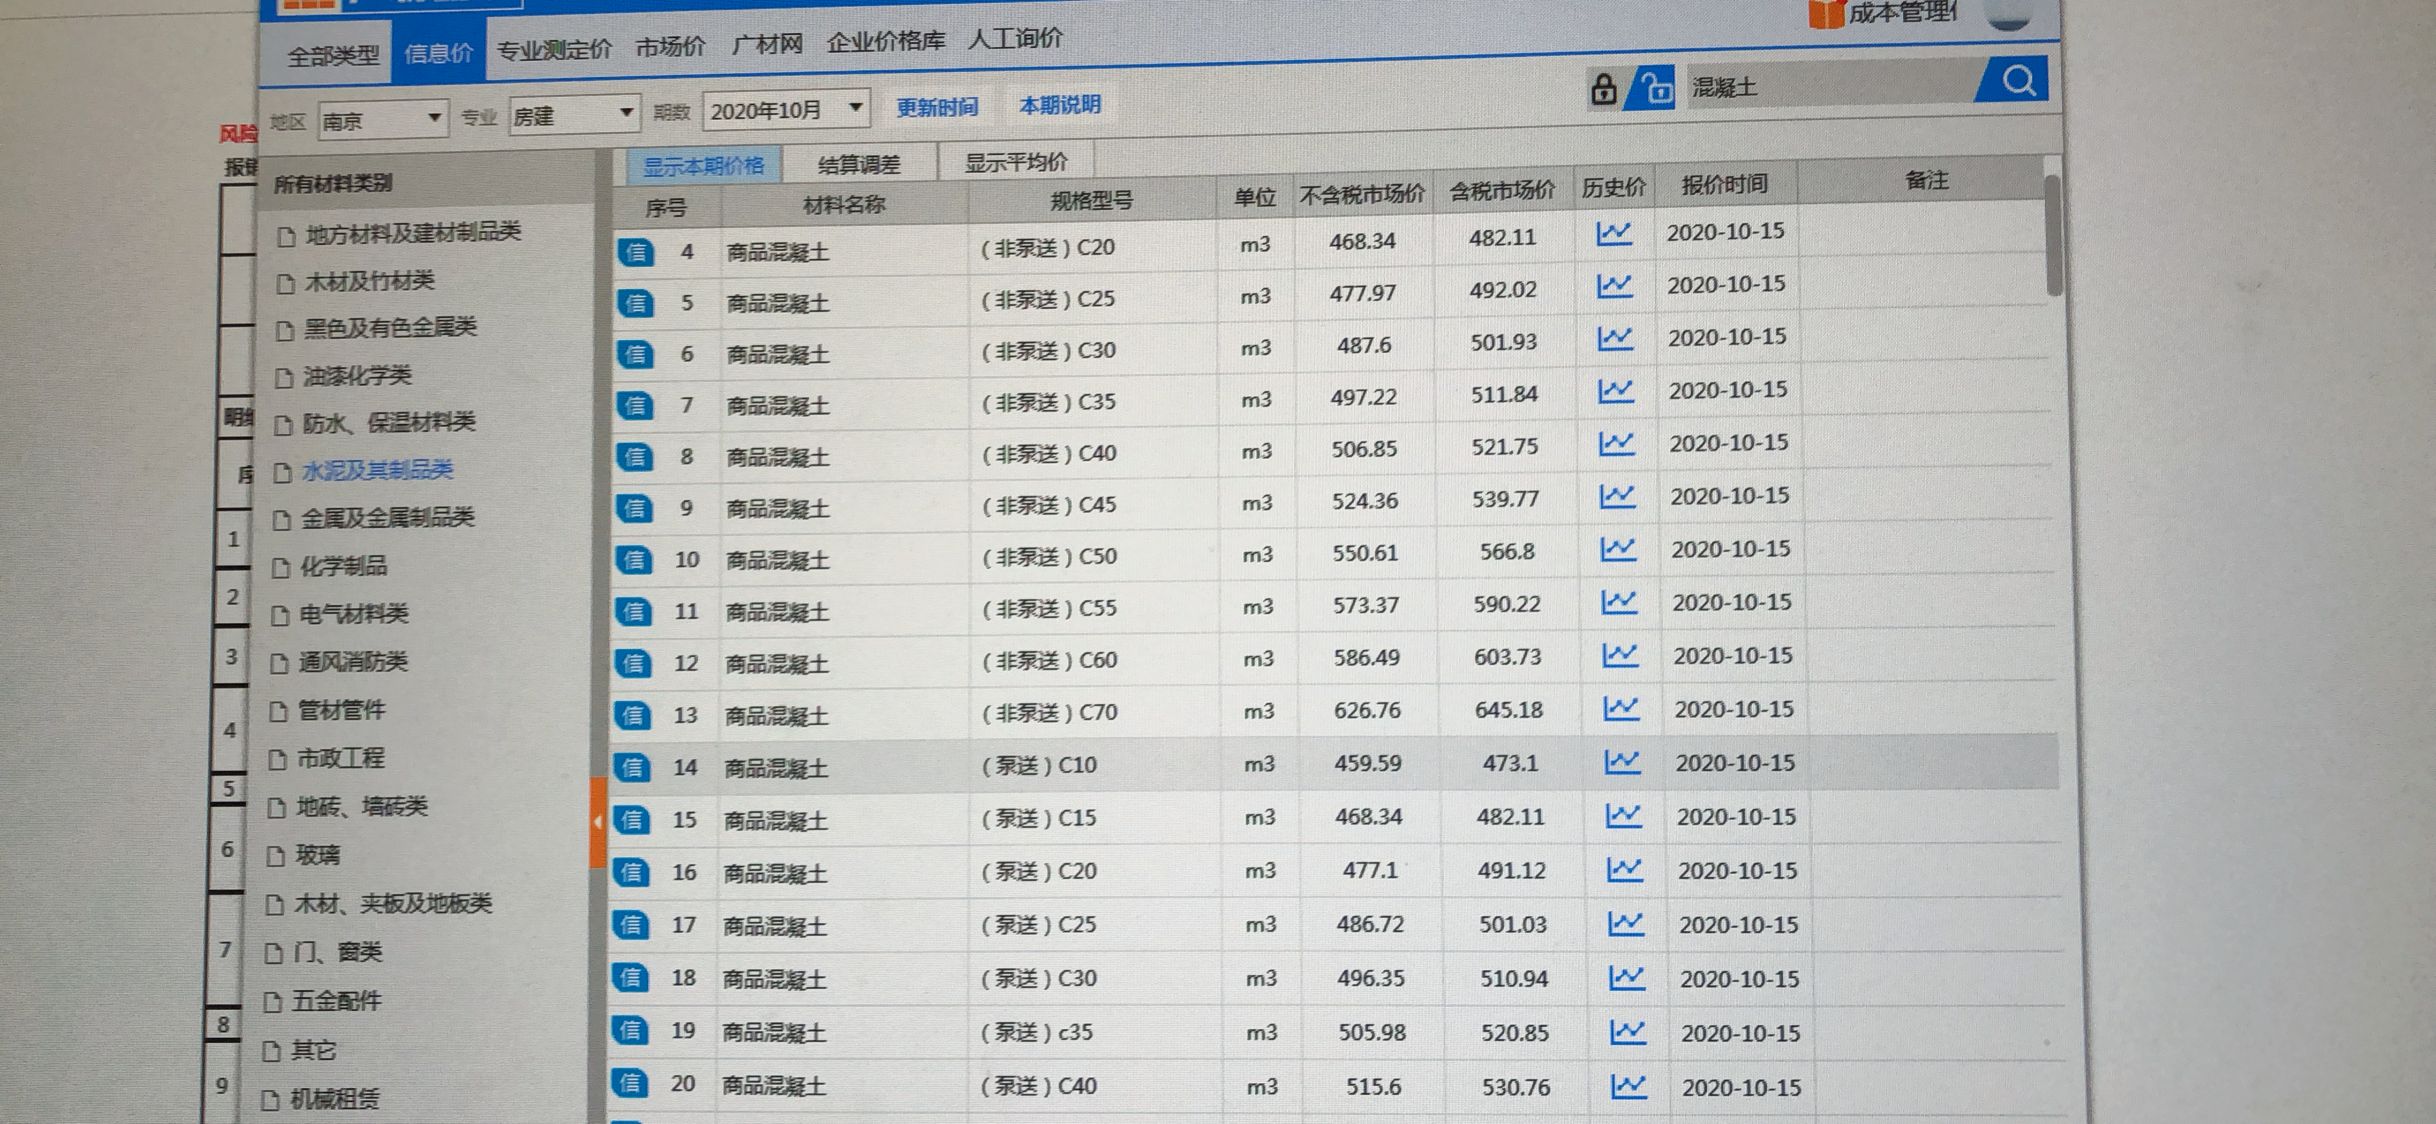 就是广材网的南京信息价，不含税价＊1.03后的价格和含税价有点误差是怎么回事？